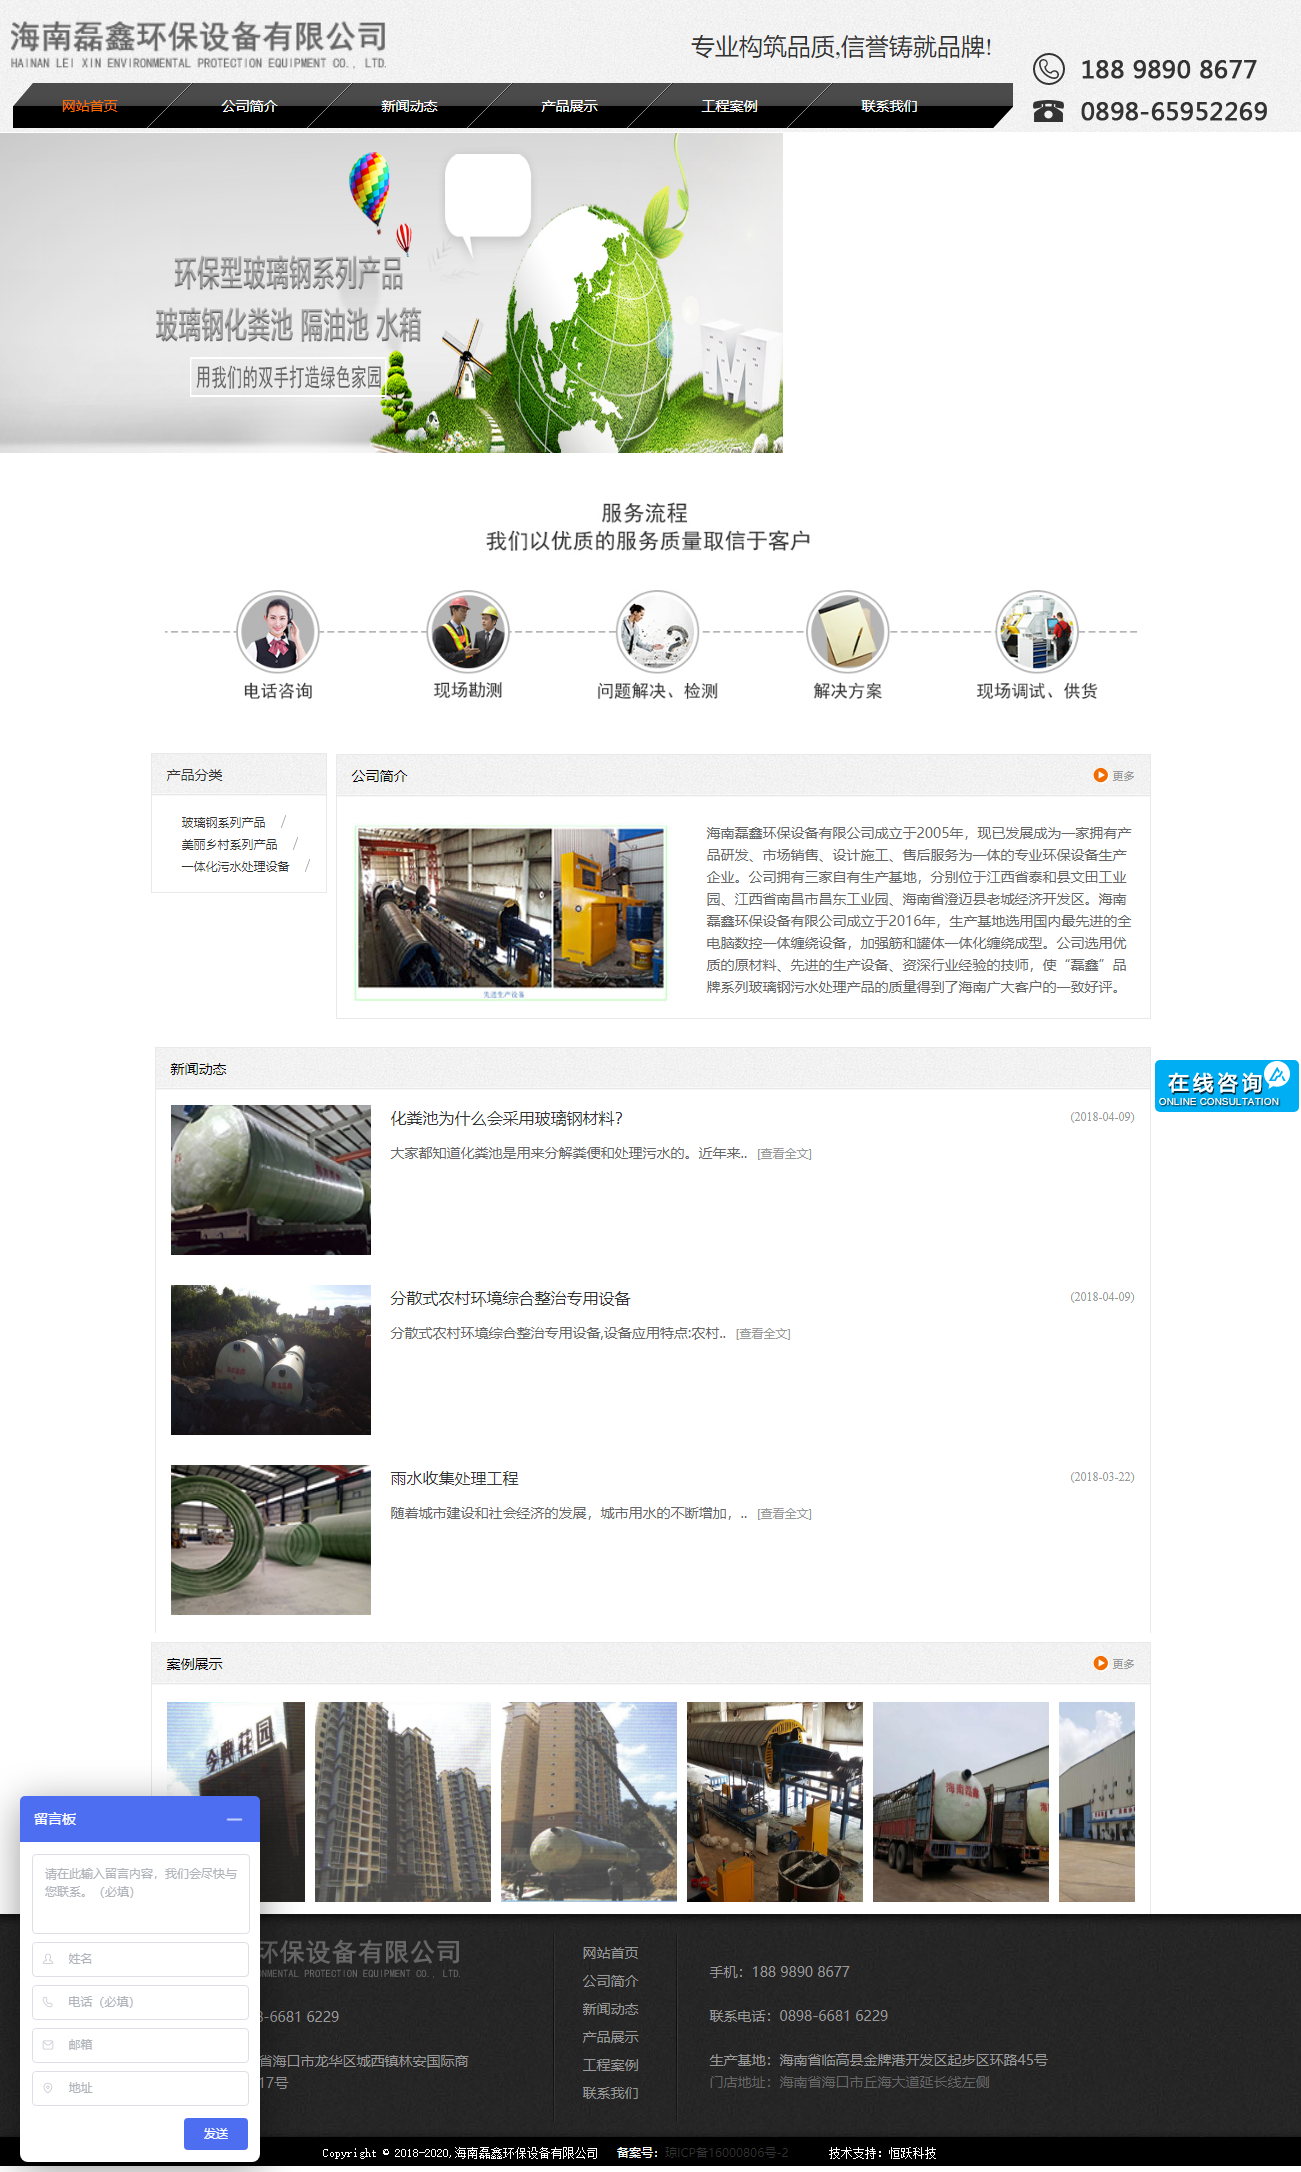 海南磊鑫环保设备有限公司网站案例